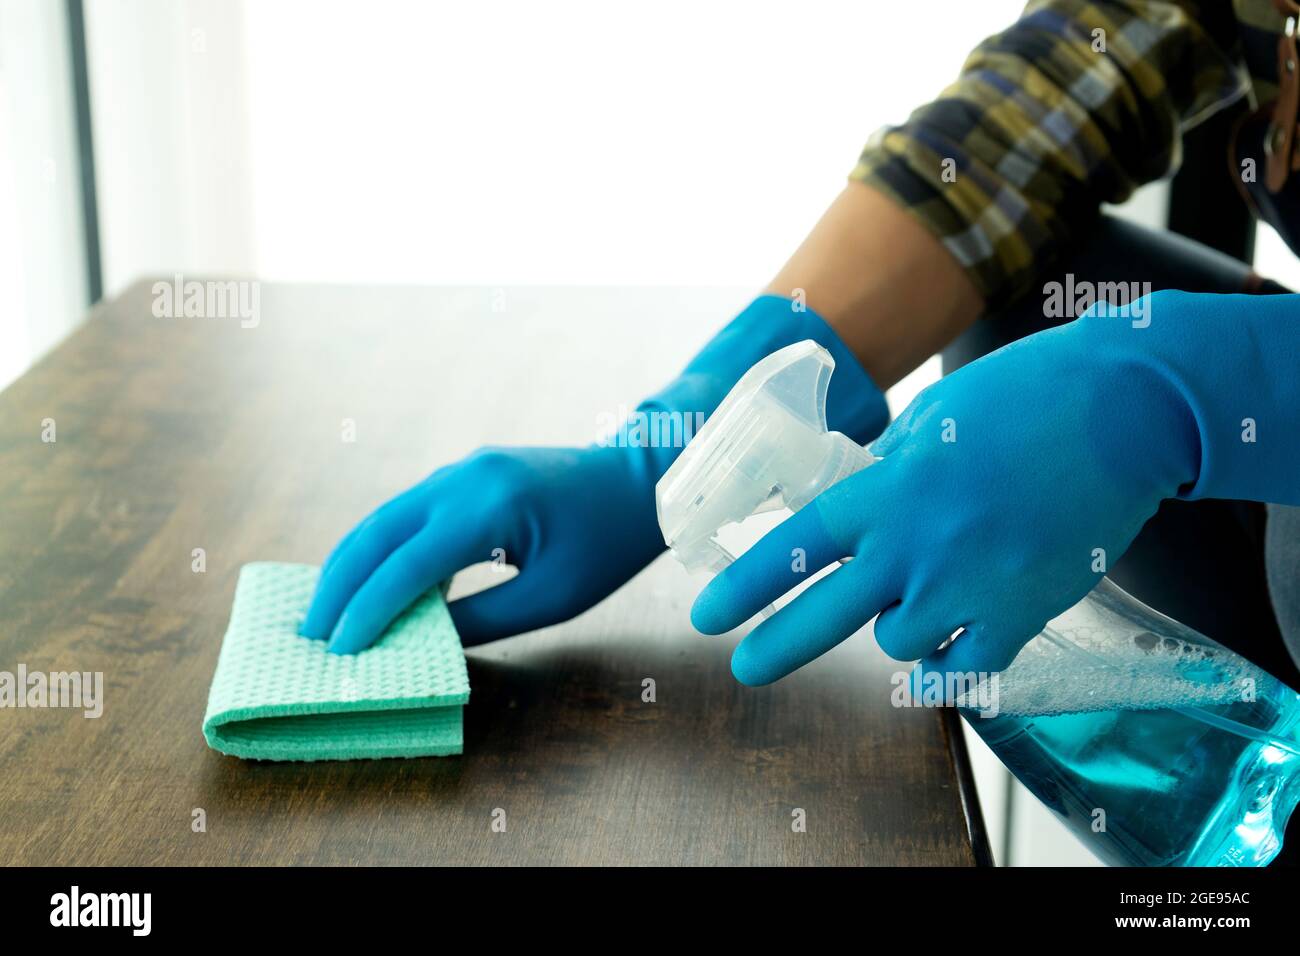 Le personnel nettoie le plan d'examen à l'aide d'un chiffon et d'un désinfectant pour le nettoyage et la prévention des maladies Covid-19. Banque D'Images